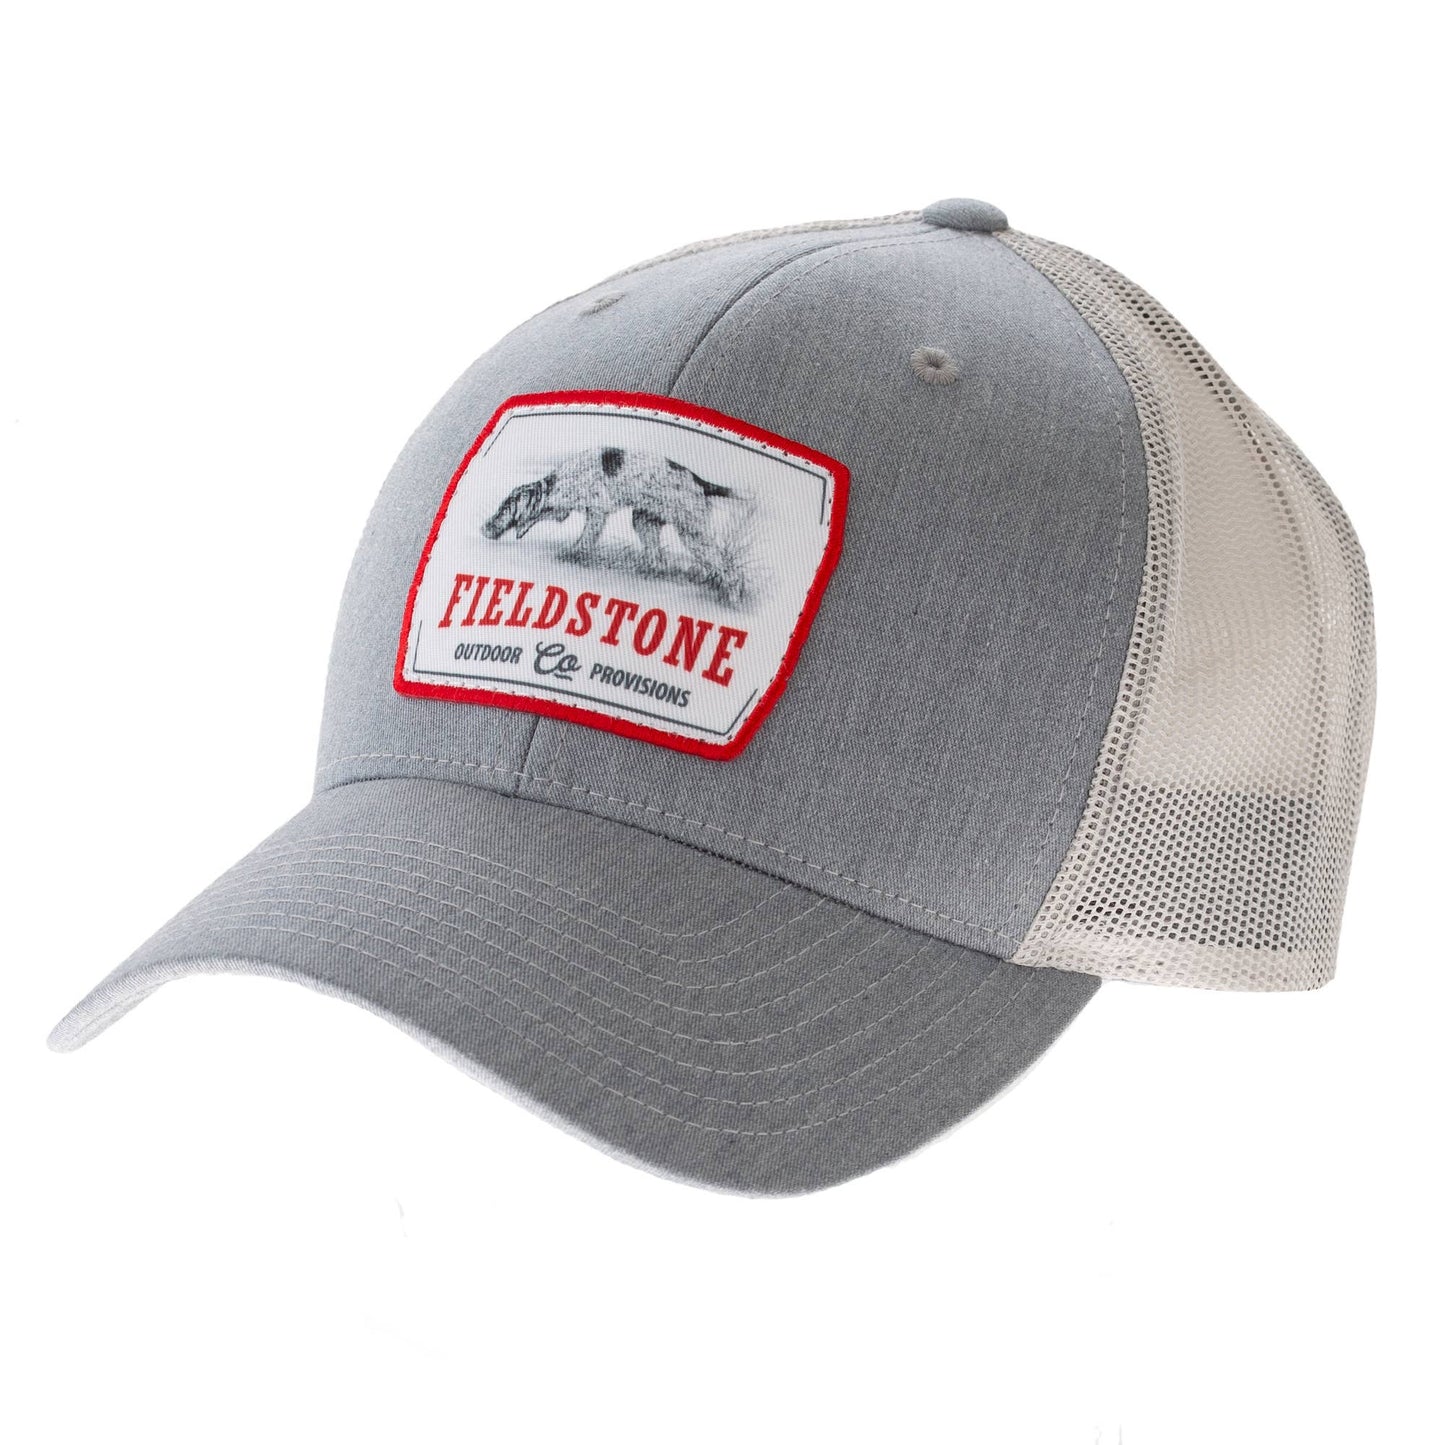 Fieldstone Outdoor Provisions Co. - Field Hunt Hat ( 176 )